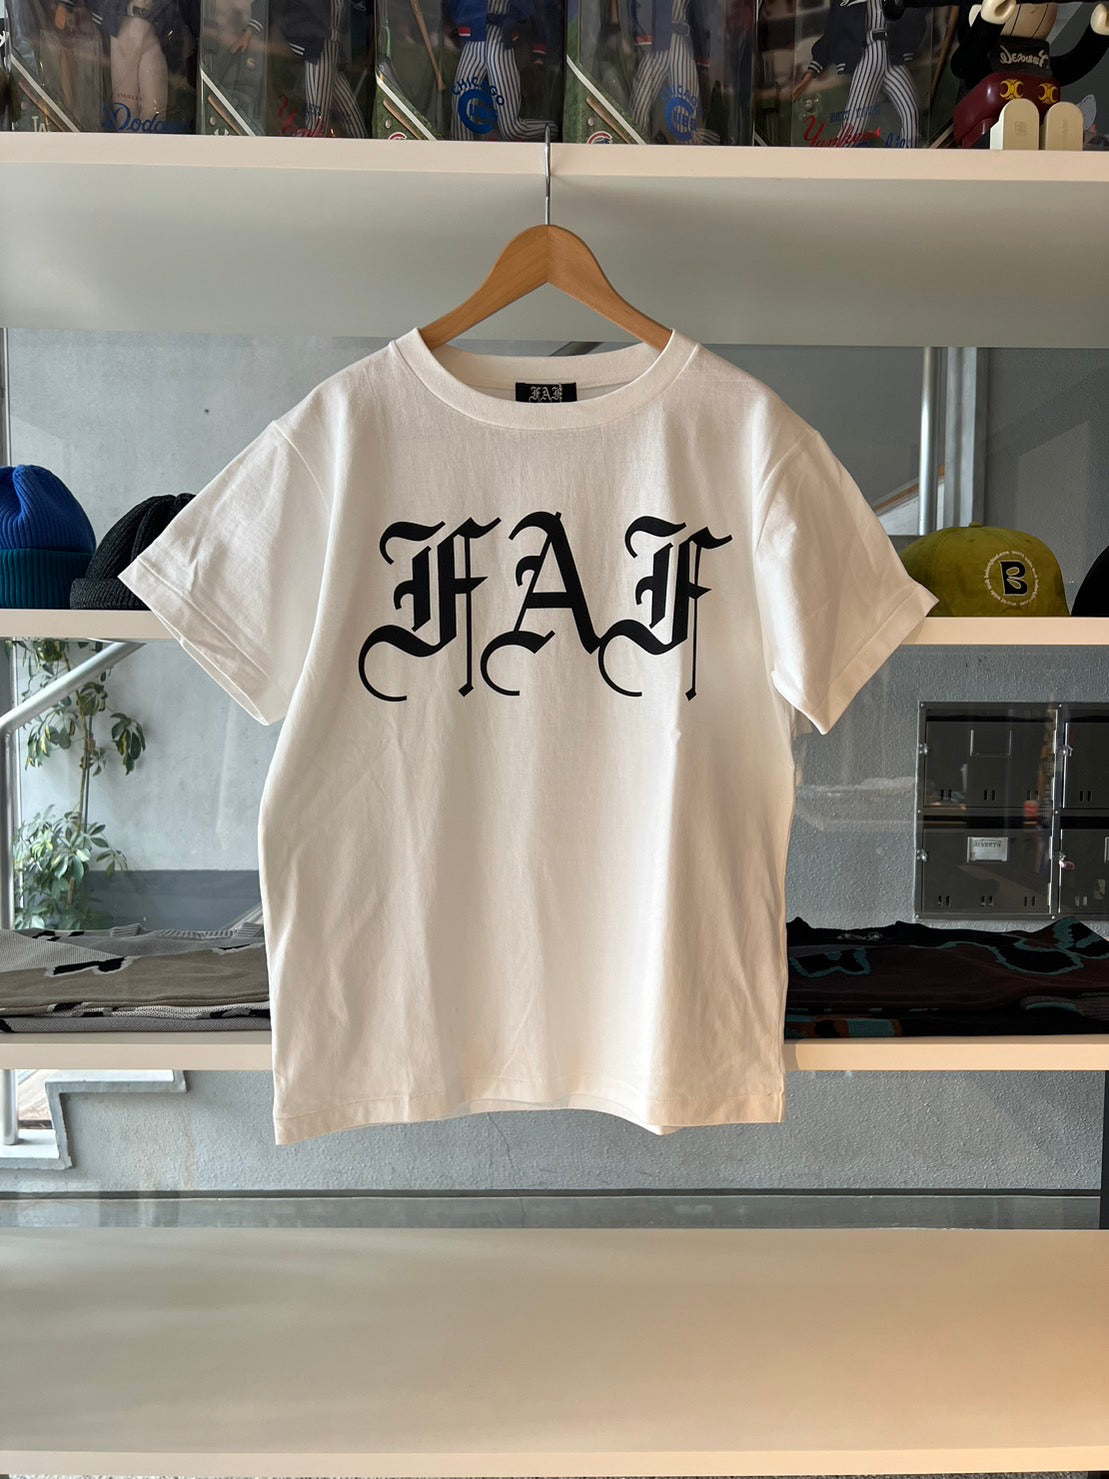 FAF T shirt